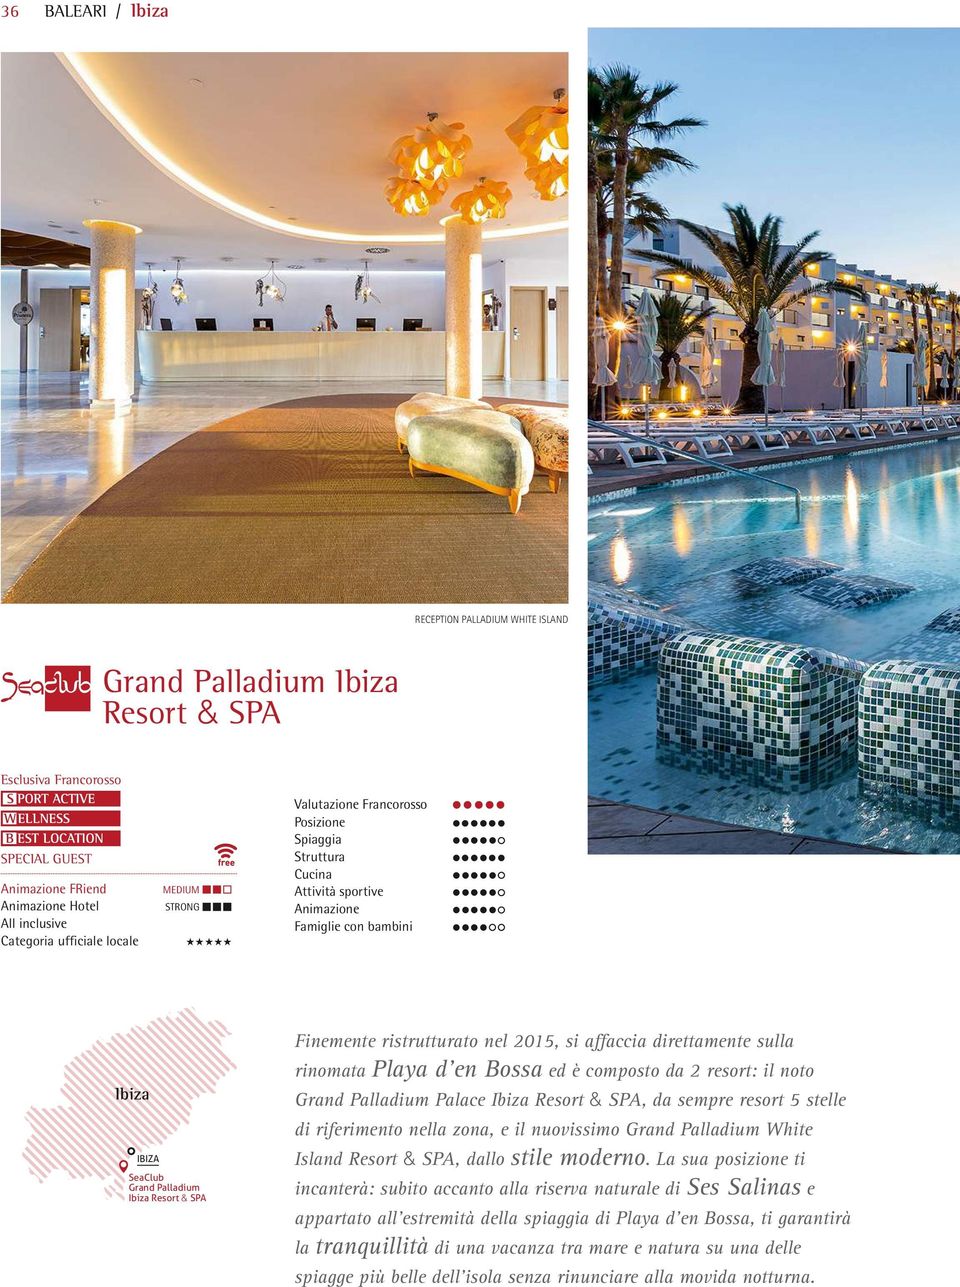 ristrutturato nel 2015, si affaccia direttamente sulla rinomata Playa d en Bossa ed è composto da 2 resort: il noto Grand Palladium Palace Ibiza Resort & SPA, da sempre resort 5 stelle di riferimento